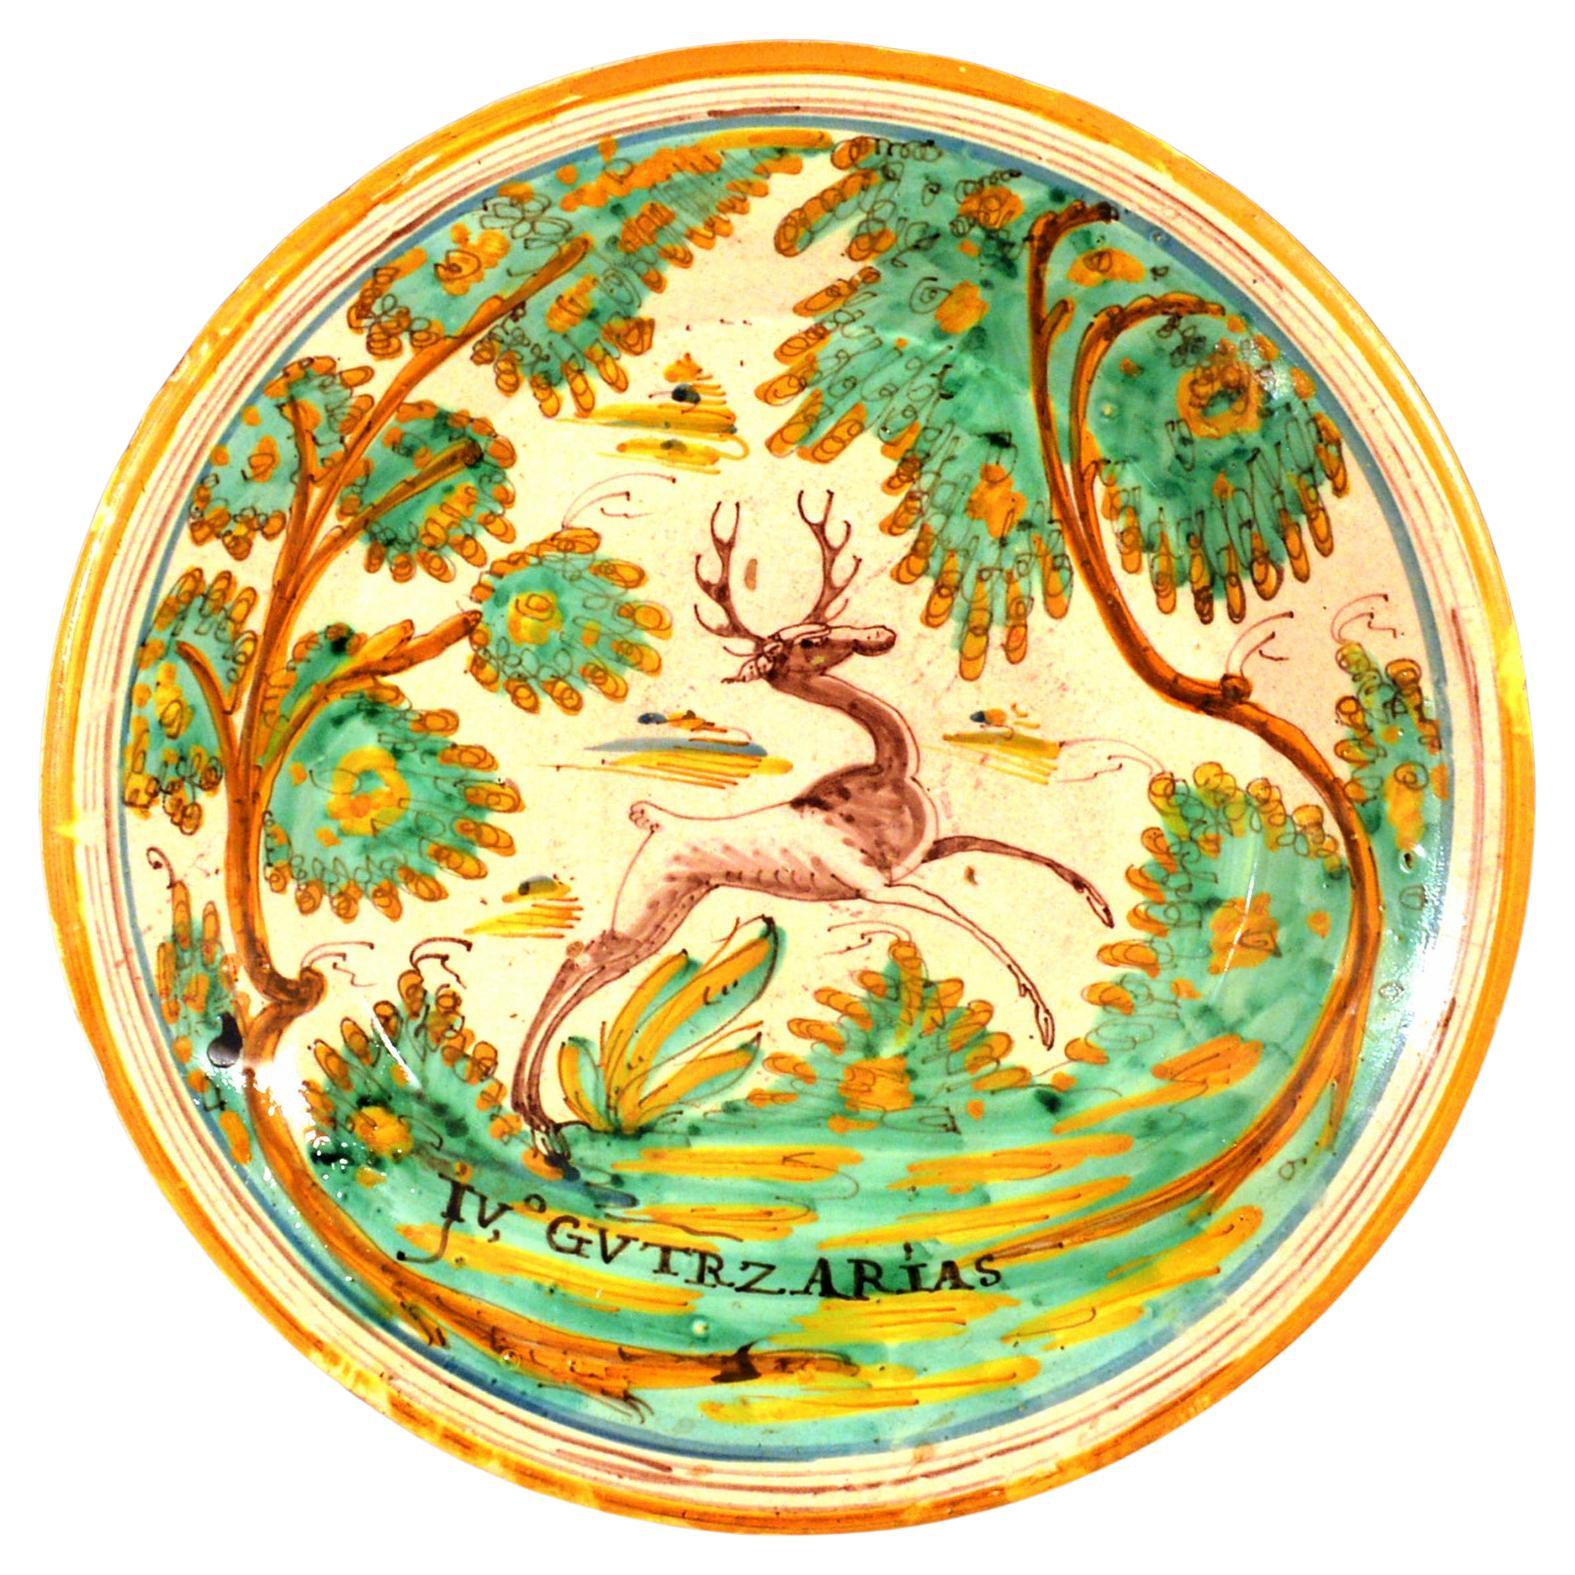 Spanisches Fayencegeschirr mit springendem Hirsch, Talavera, um 1780-1800